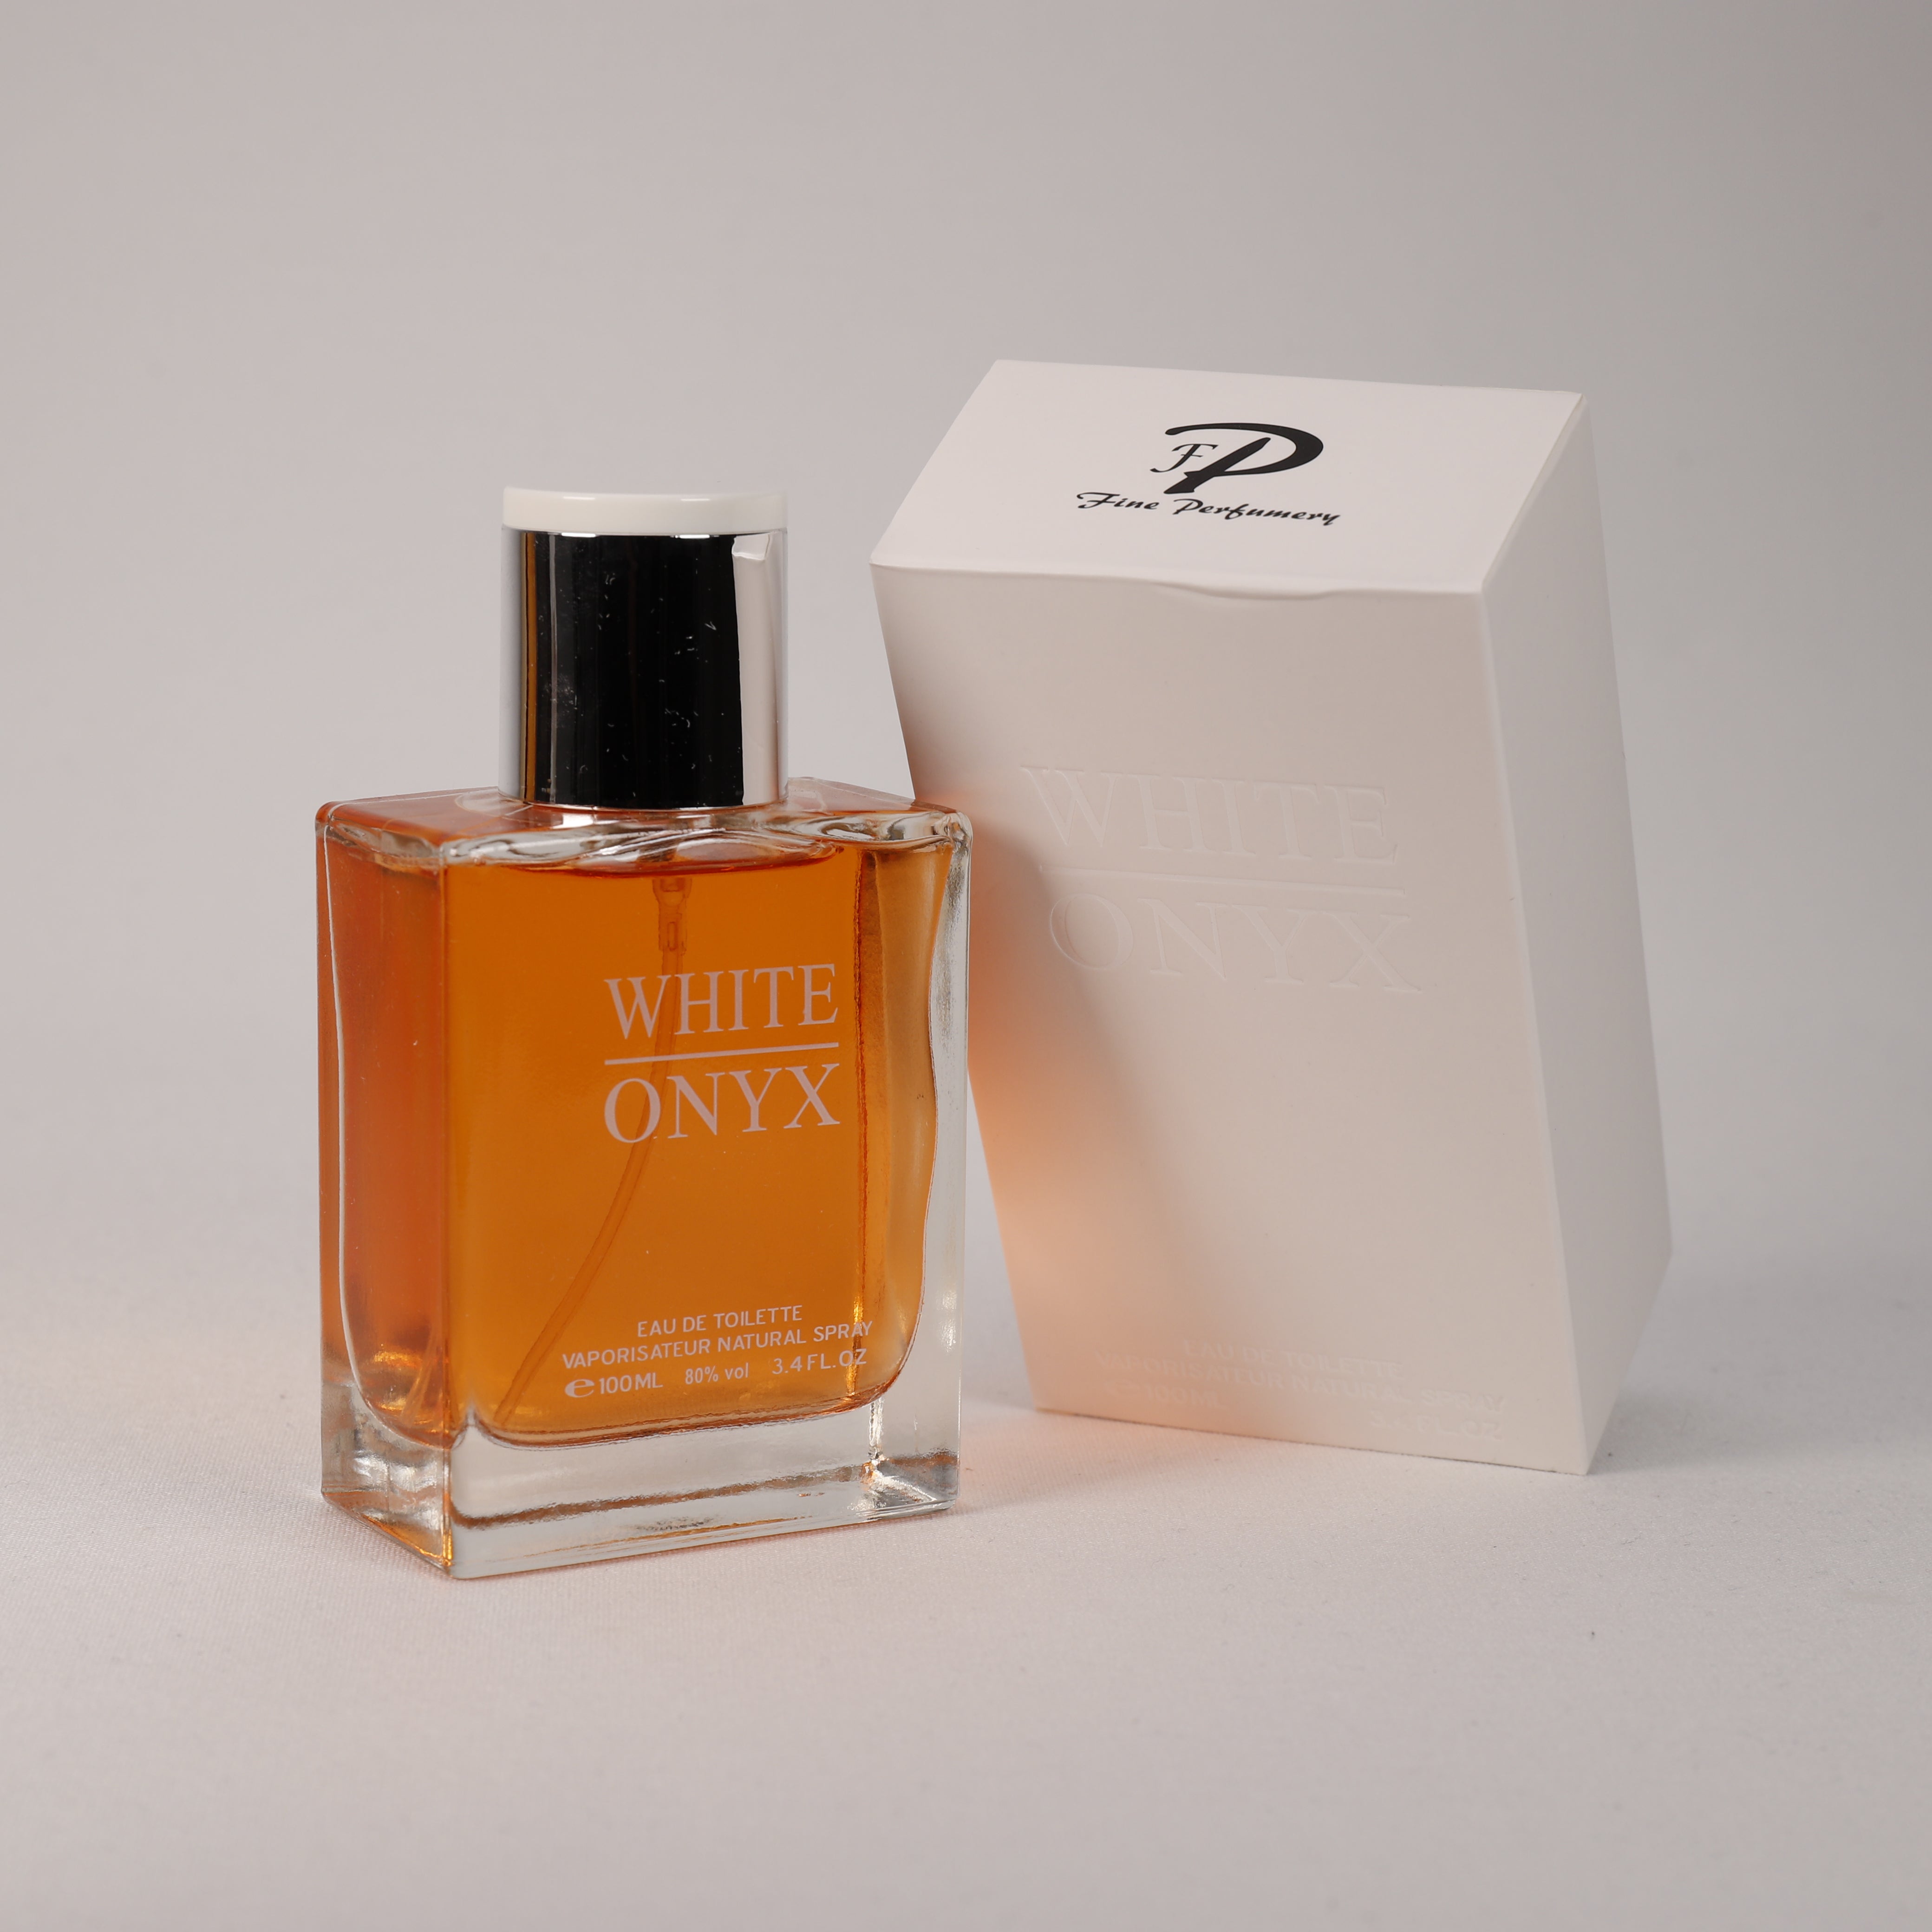 White Onyx für Herren, Vaporizer mit natürlichem Spray, 100 ml Duft, Parfum, Parfüm, NEU OVP